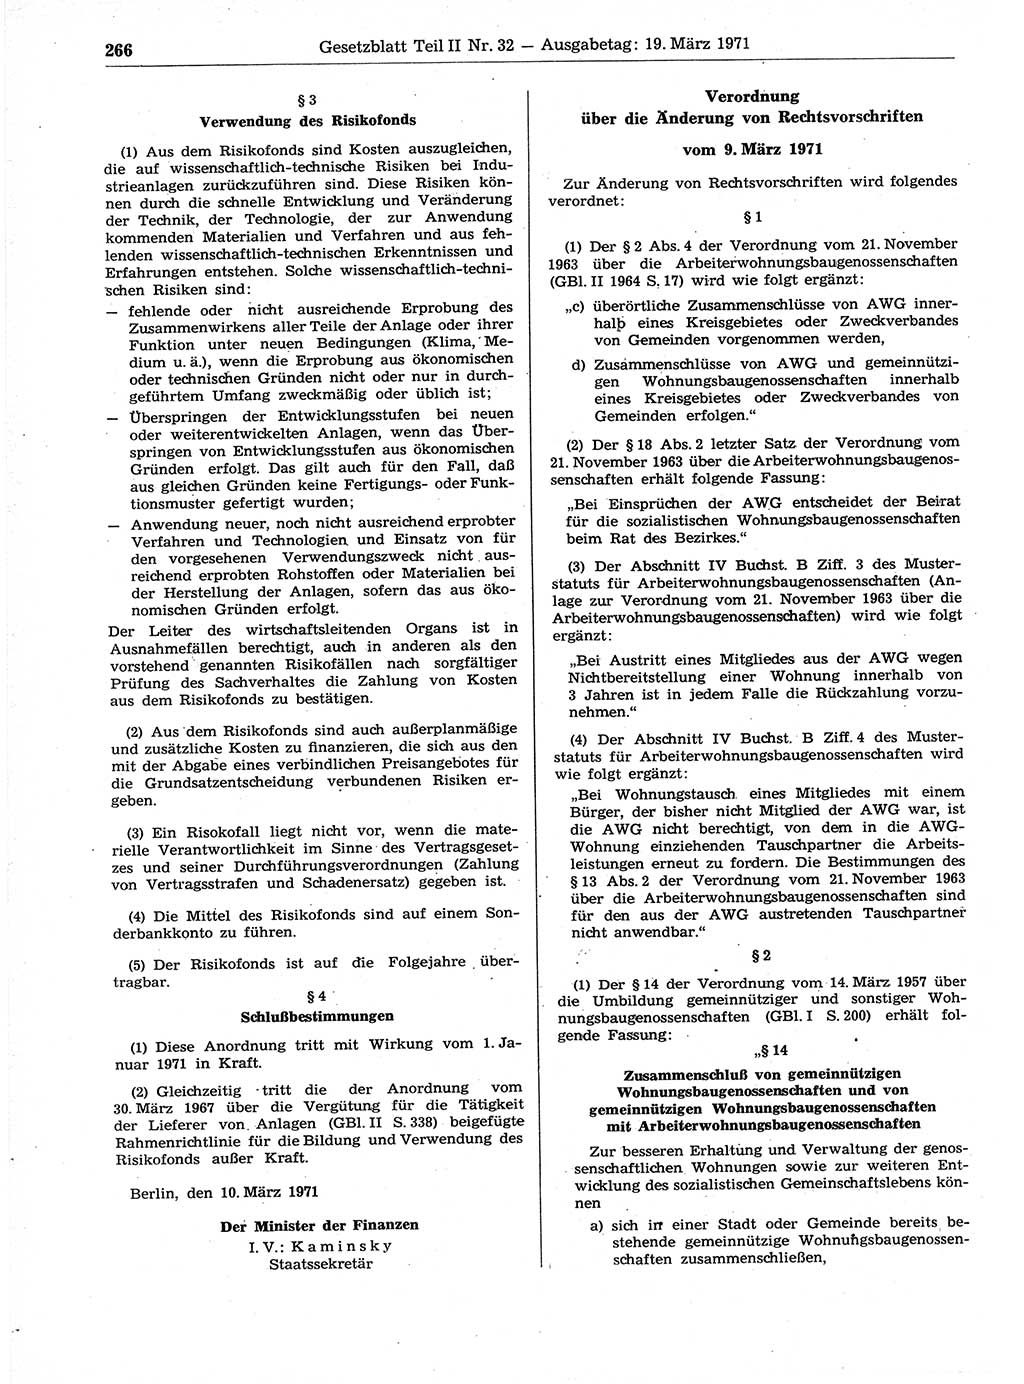 Gesetzblatt (GBl.) der Deutschen Demokratischen Republik (DDR) Teil ⅠⅠ 1971, Seite 266 (GBl. DDR ⅠⅠ 1971, S. 266)